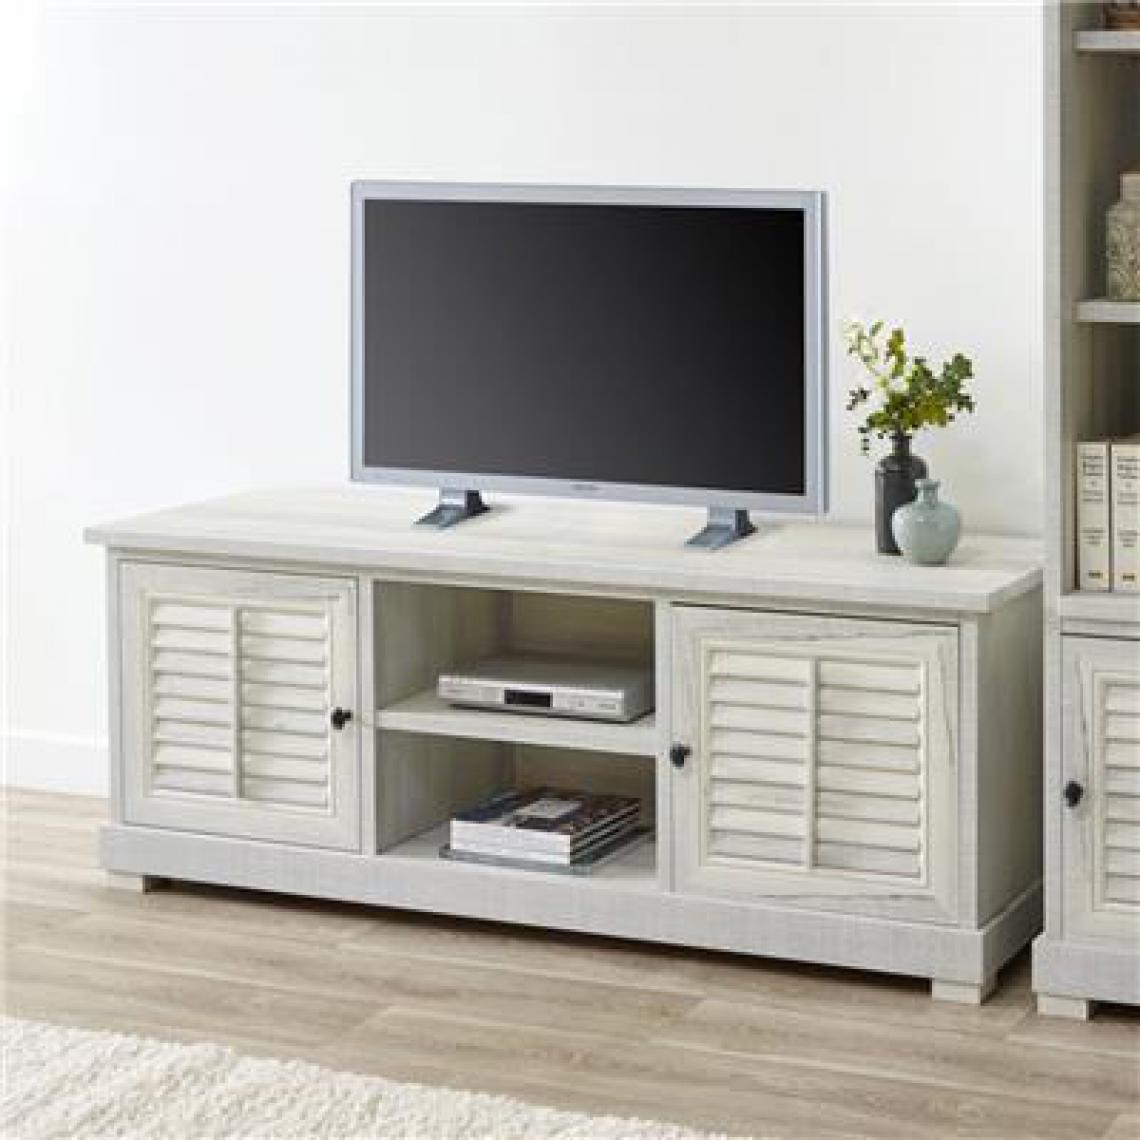 Kasalinea - Meuble tv contemporain couleur bois blanc AURELIA-L 190,8 x P 50 x H 59,7 cm- Beige - Meubles TV, Hi-Fi